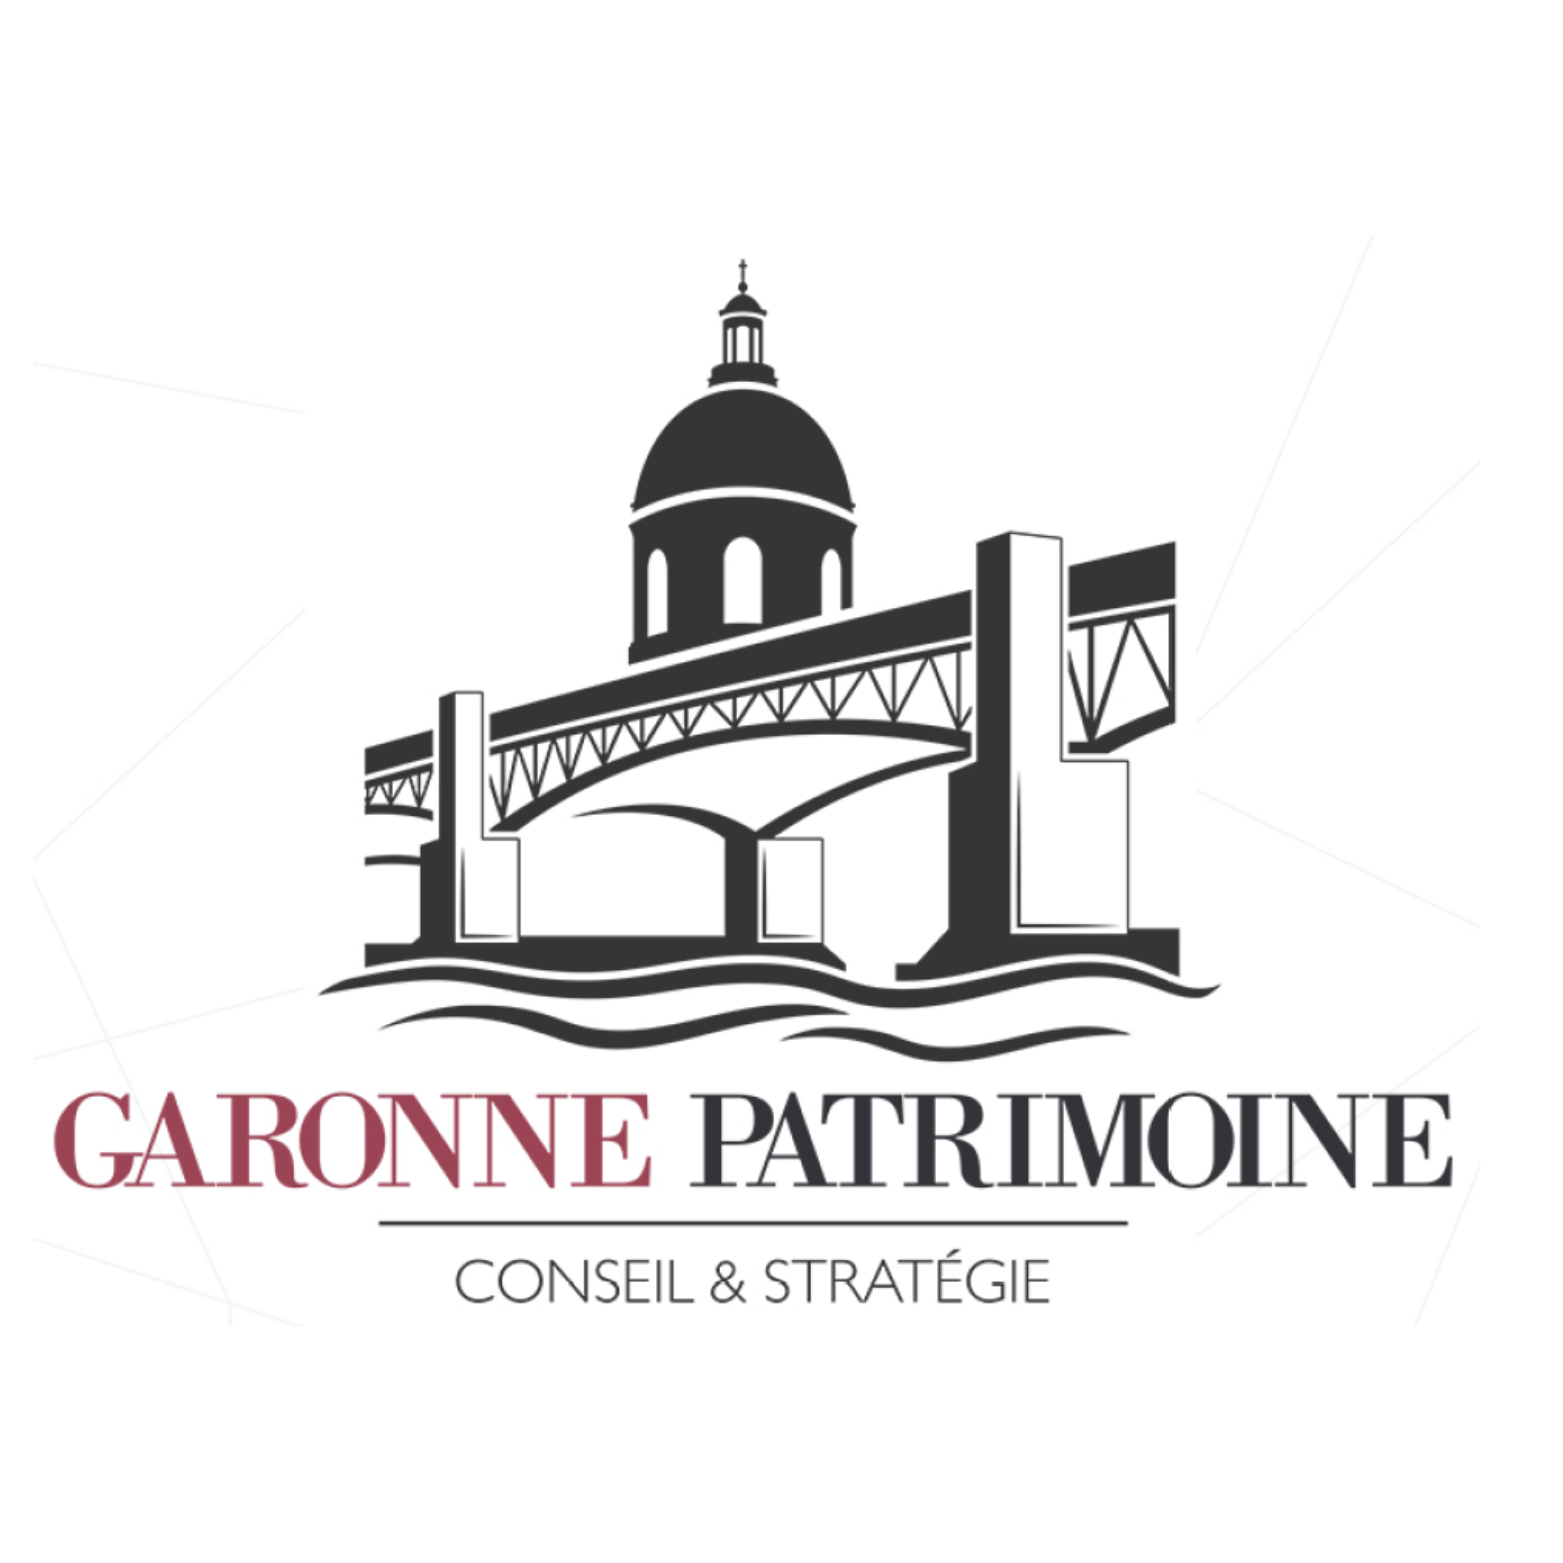 Garonne Patrimoine